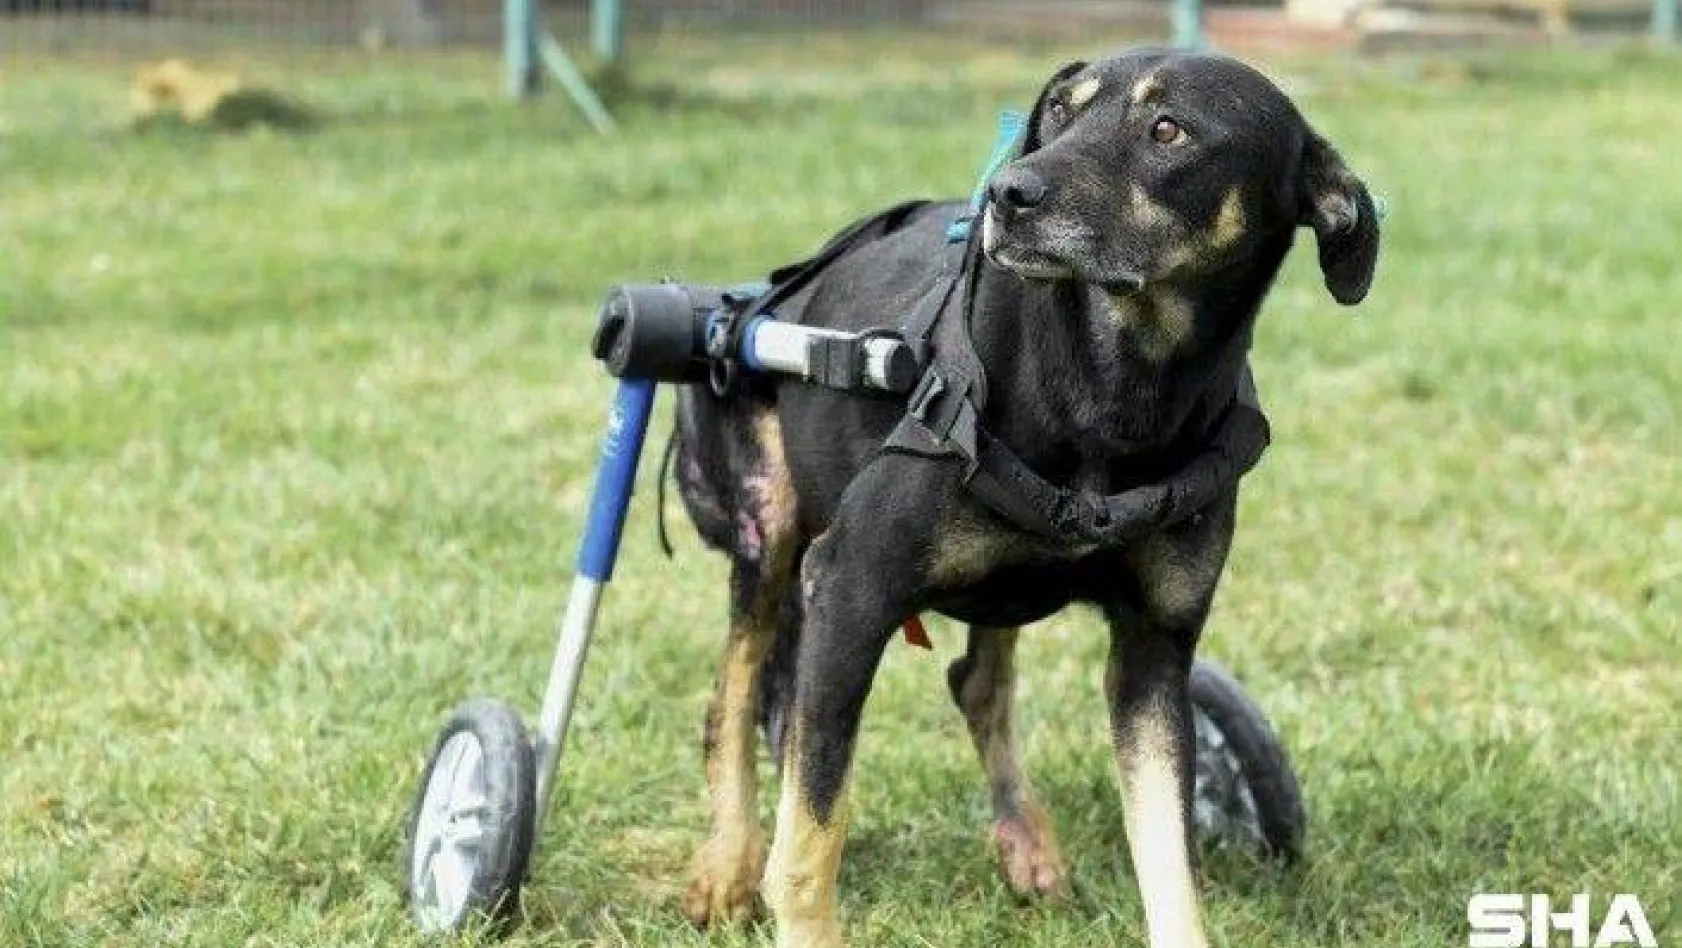 Umut isimli köpek özel tasarlanan ortopedik yürüteçle hayata tutunuyor